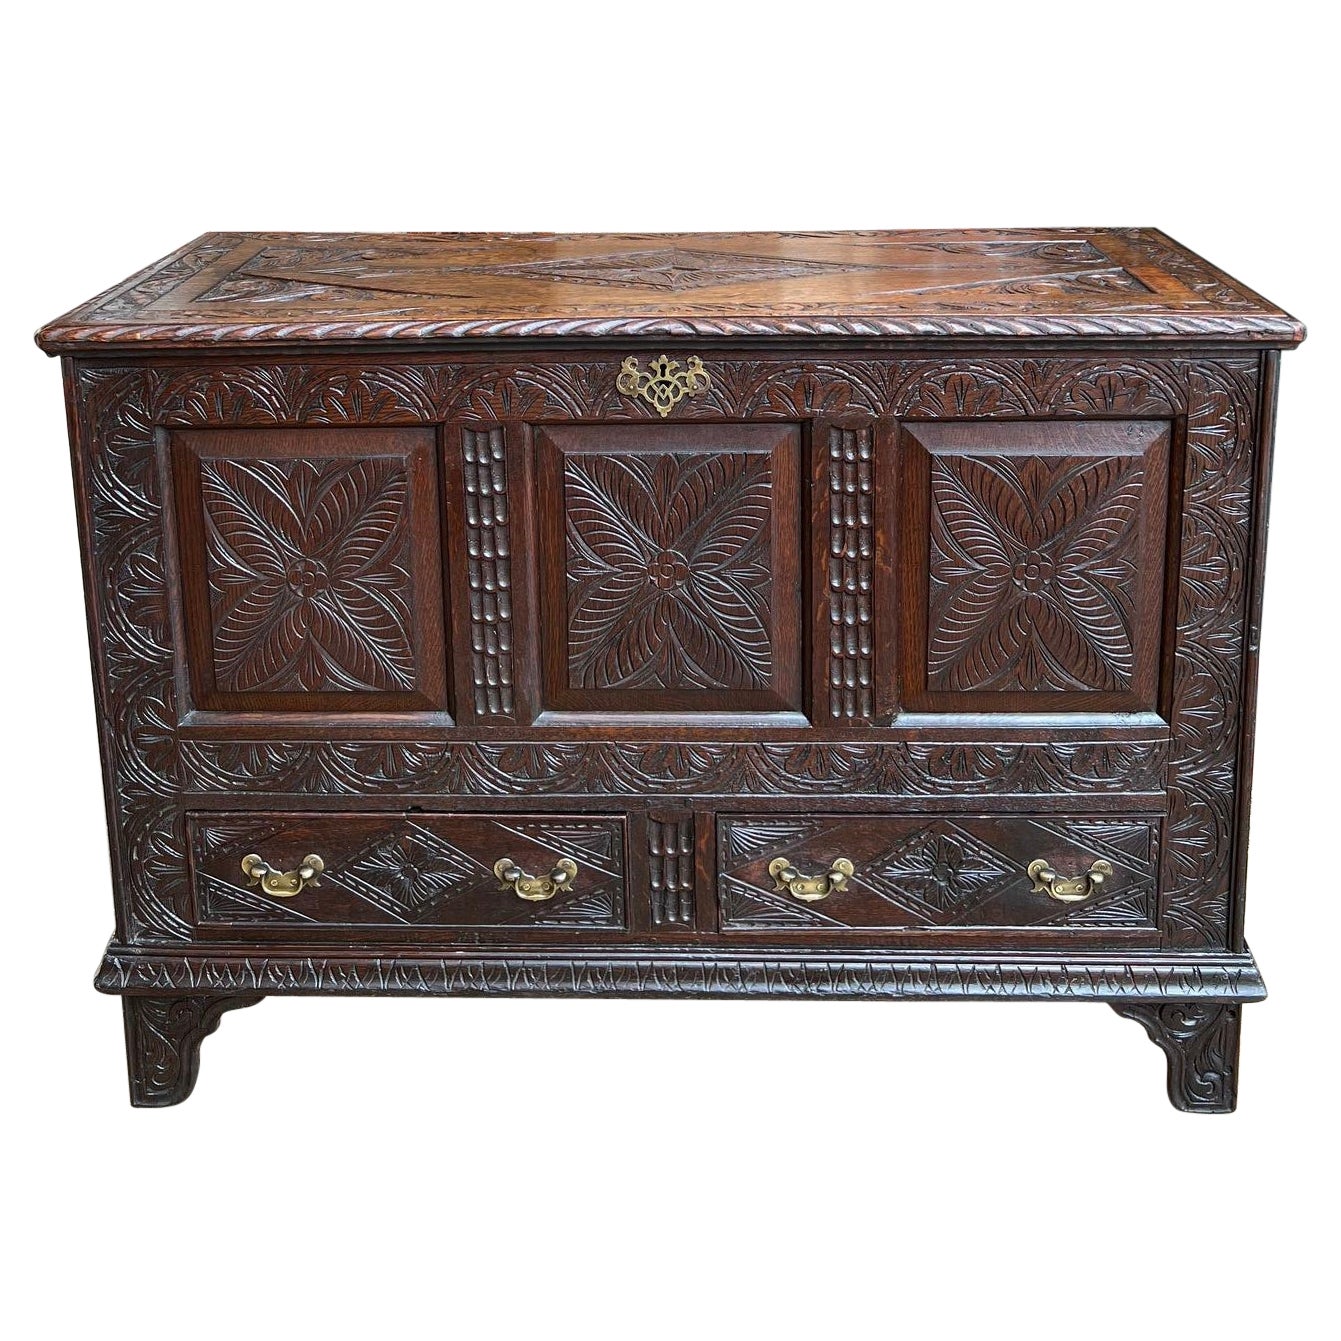 Antike englische Truhe/Koffertruhe/Hochzeitstruhe aus geschnitzter Eiche mit Foyer-Tisch aus Eichenholz